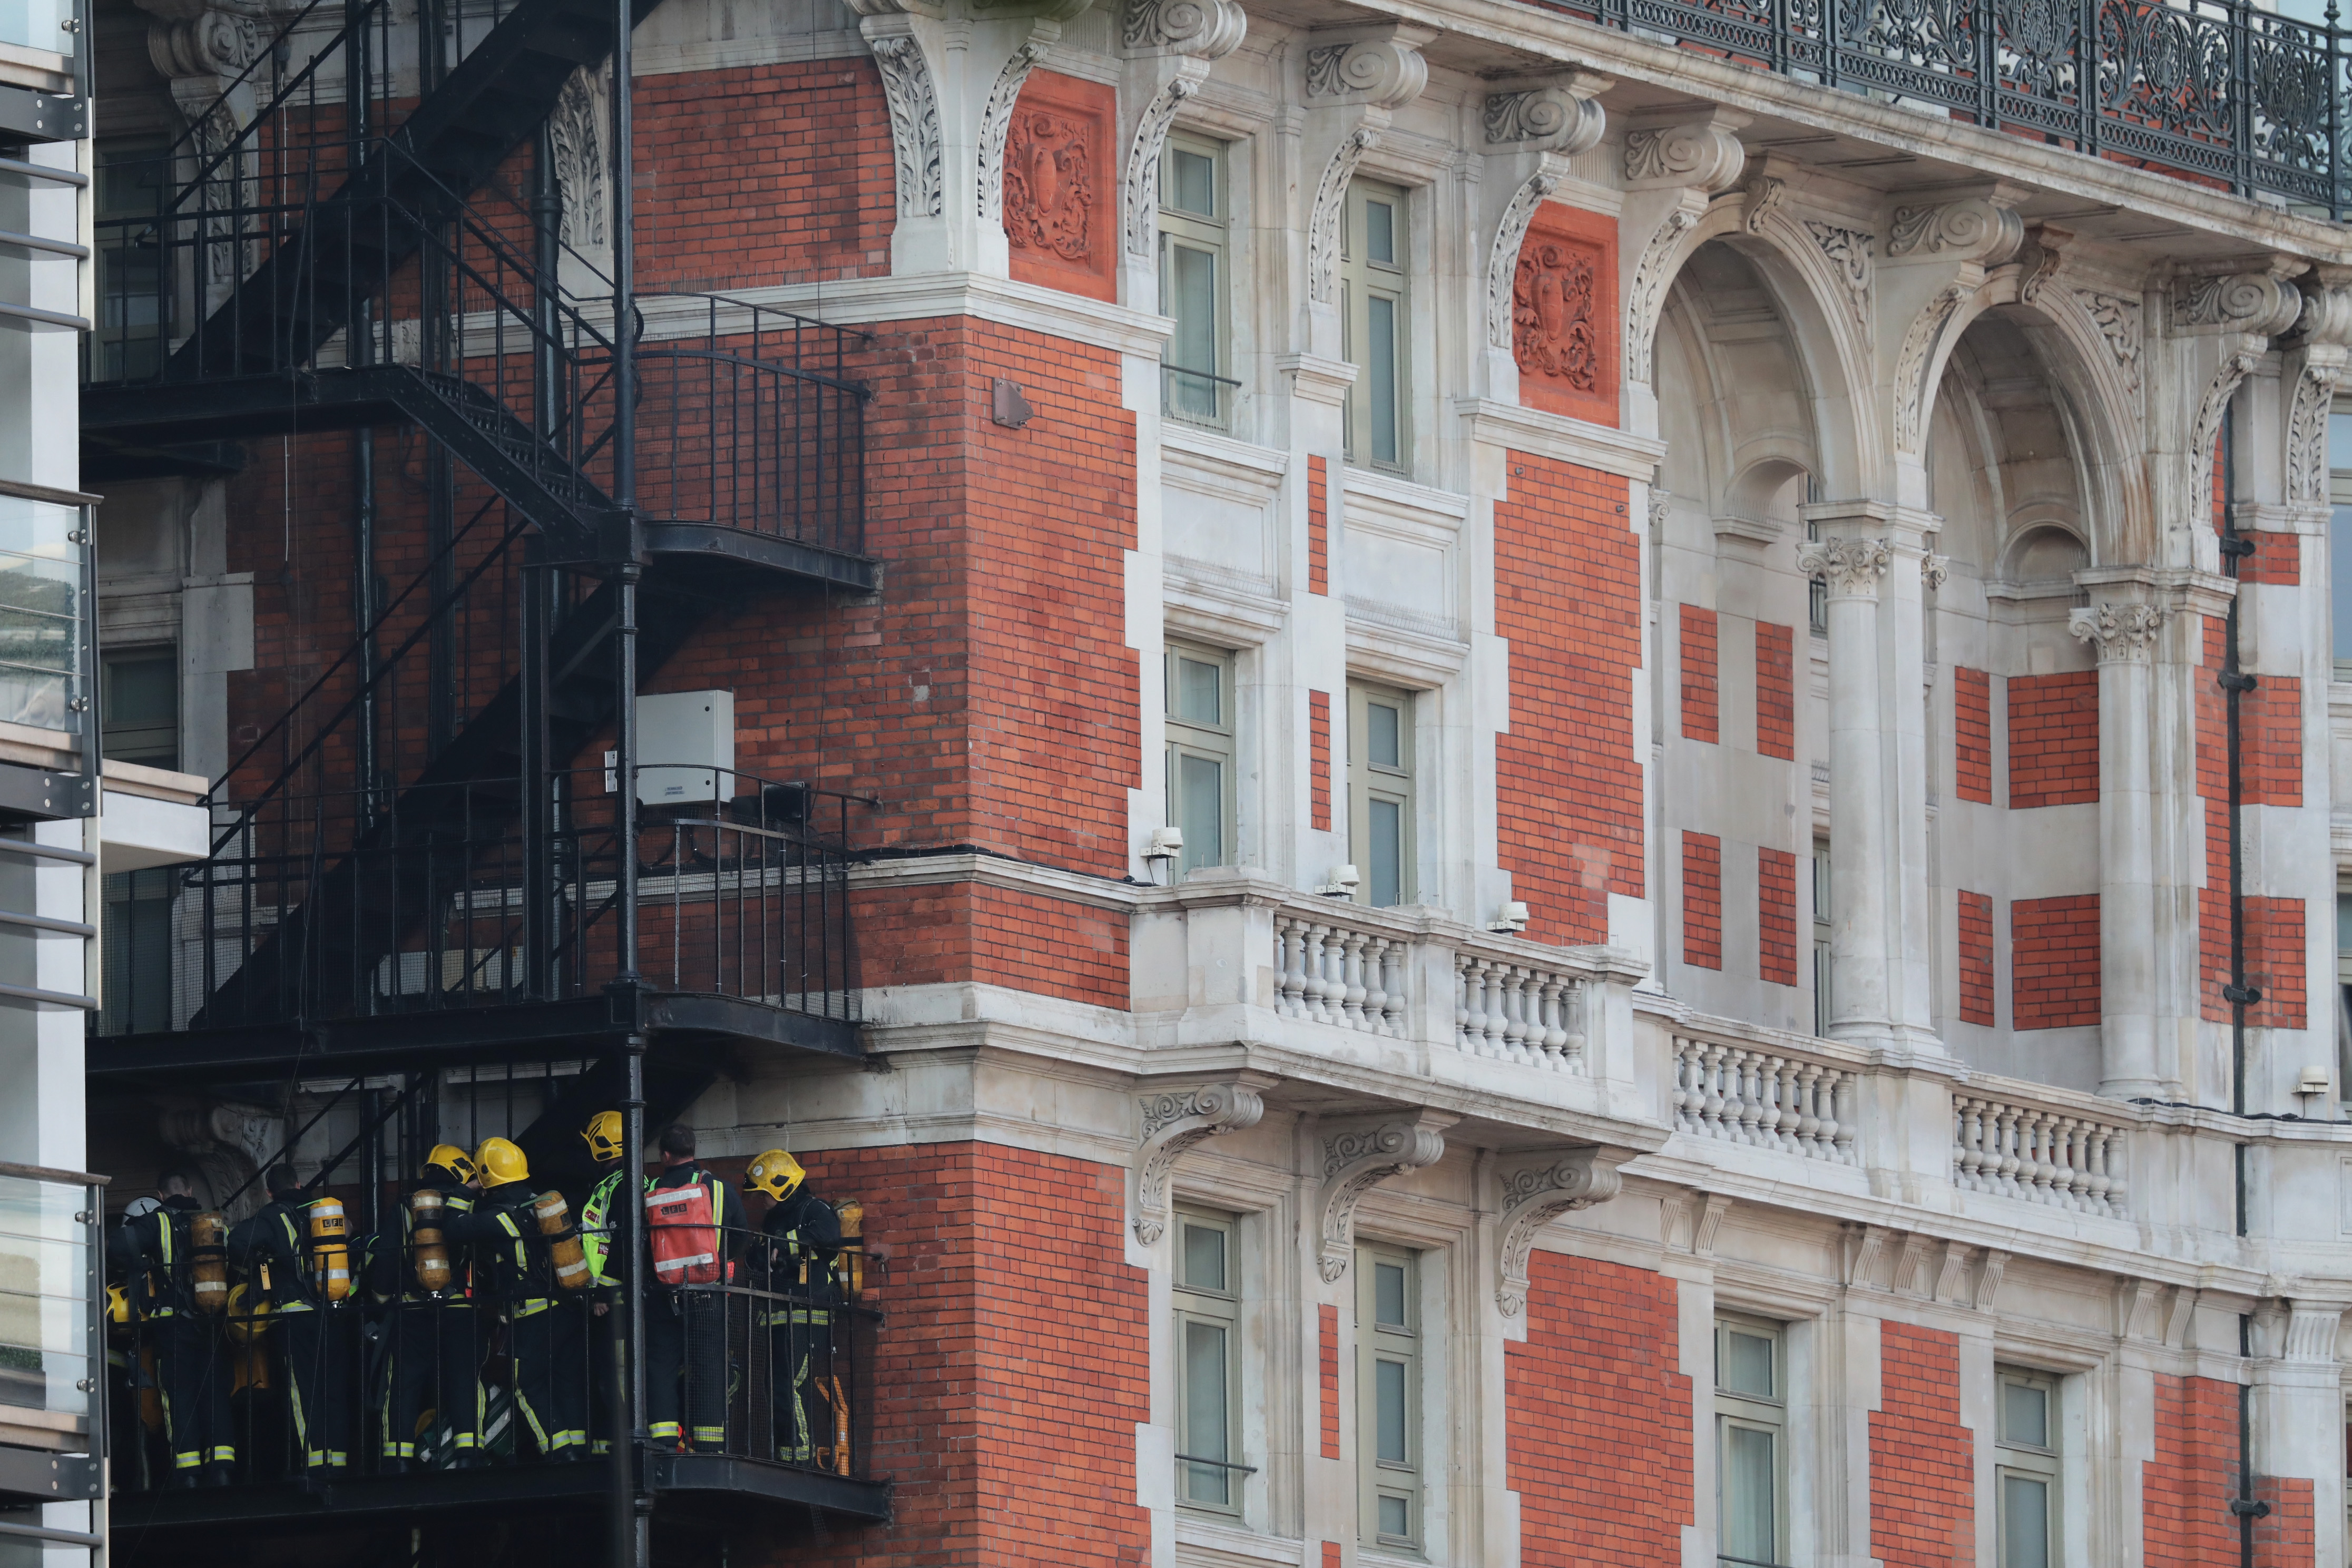 London hotel fire